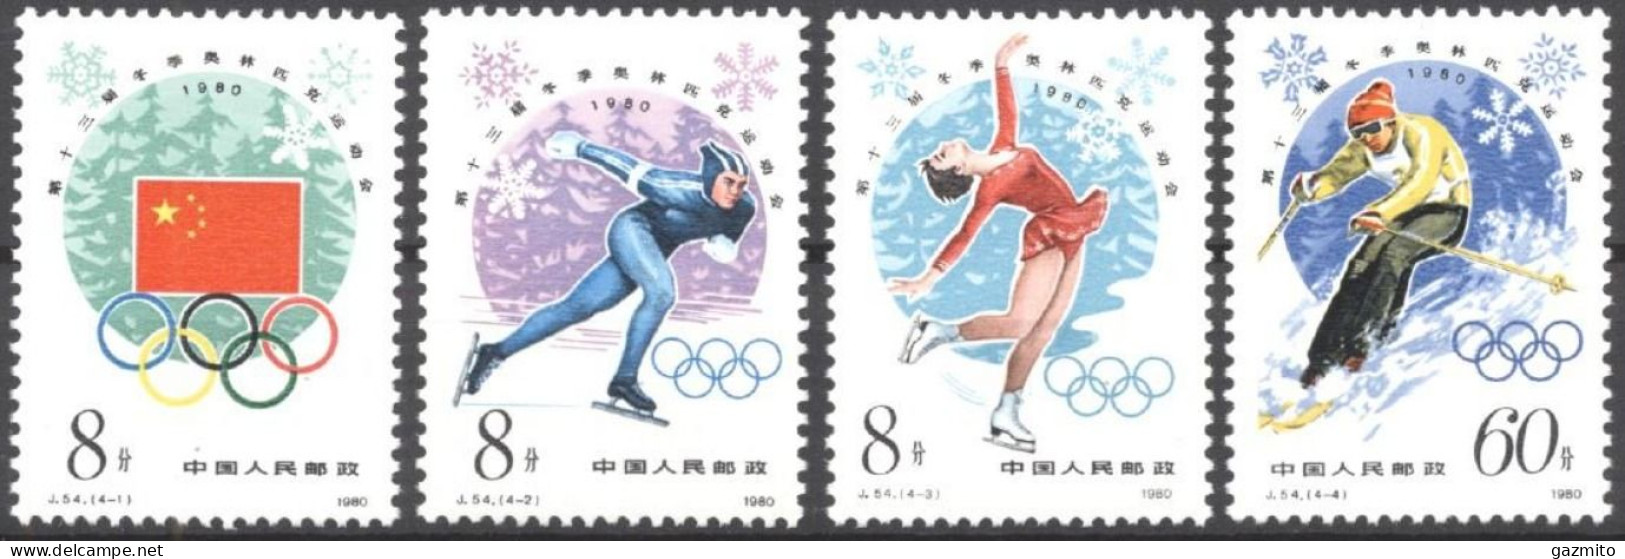 China 1980, Winter Olympic Games, Lake Placid, Skating, Skiing, 4val - Patinaje Artístico